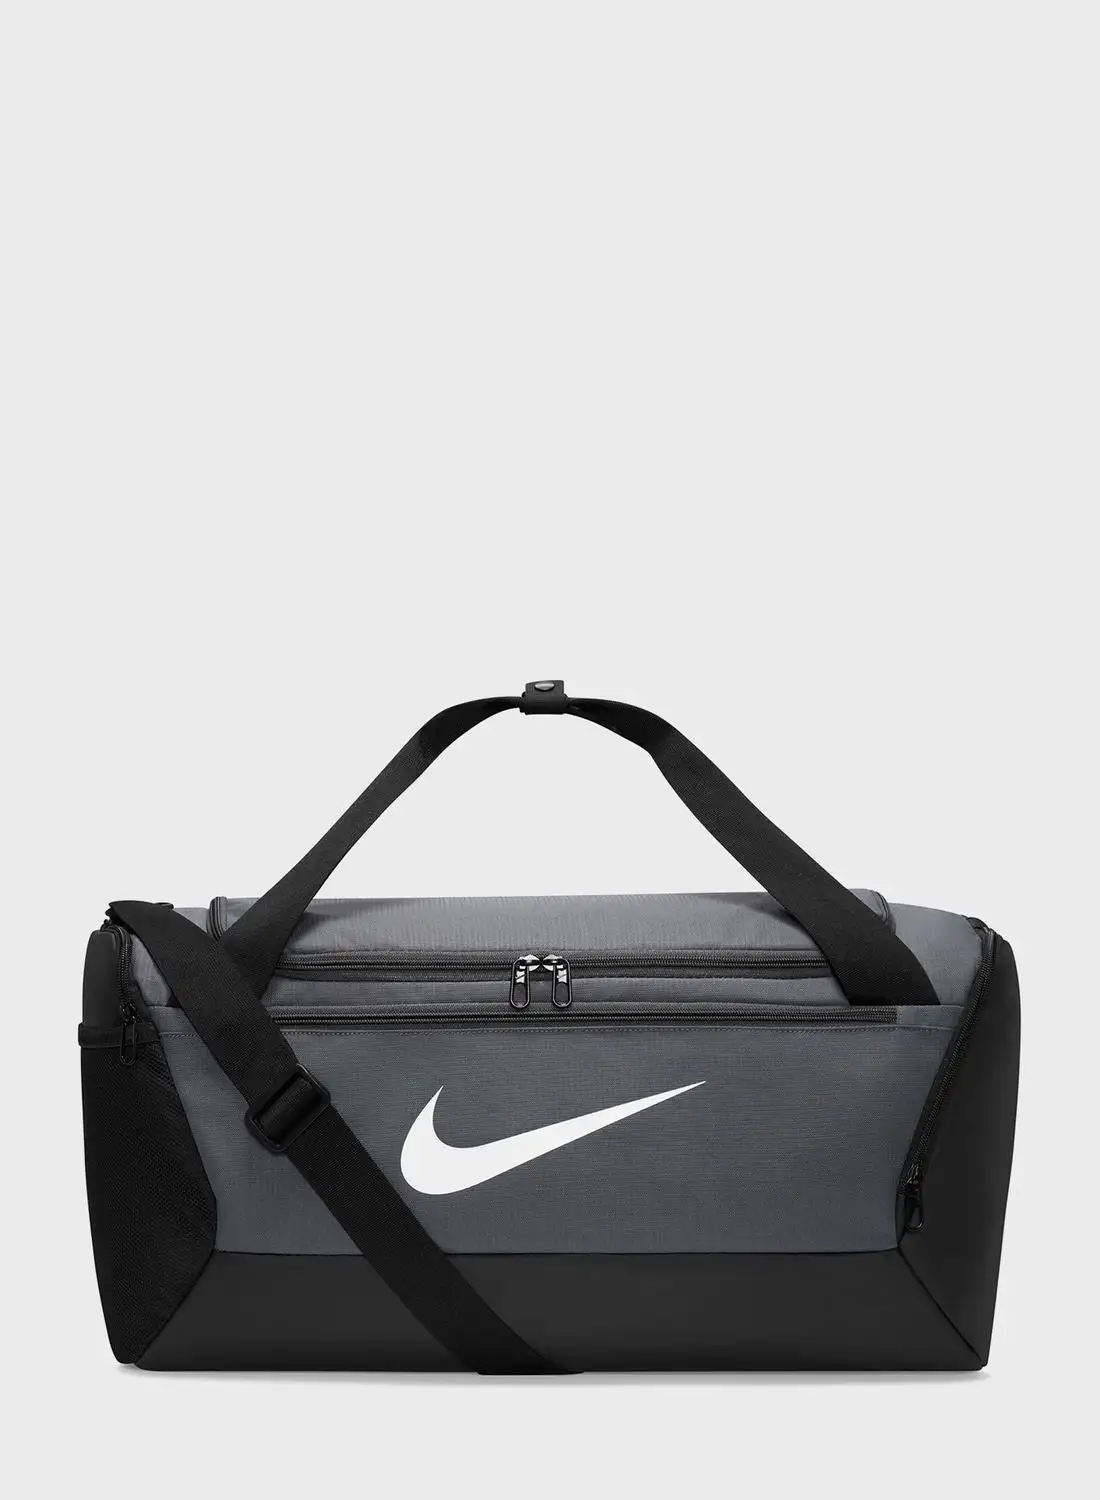 Nike Brasilis Duffle Bag